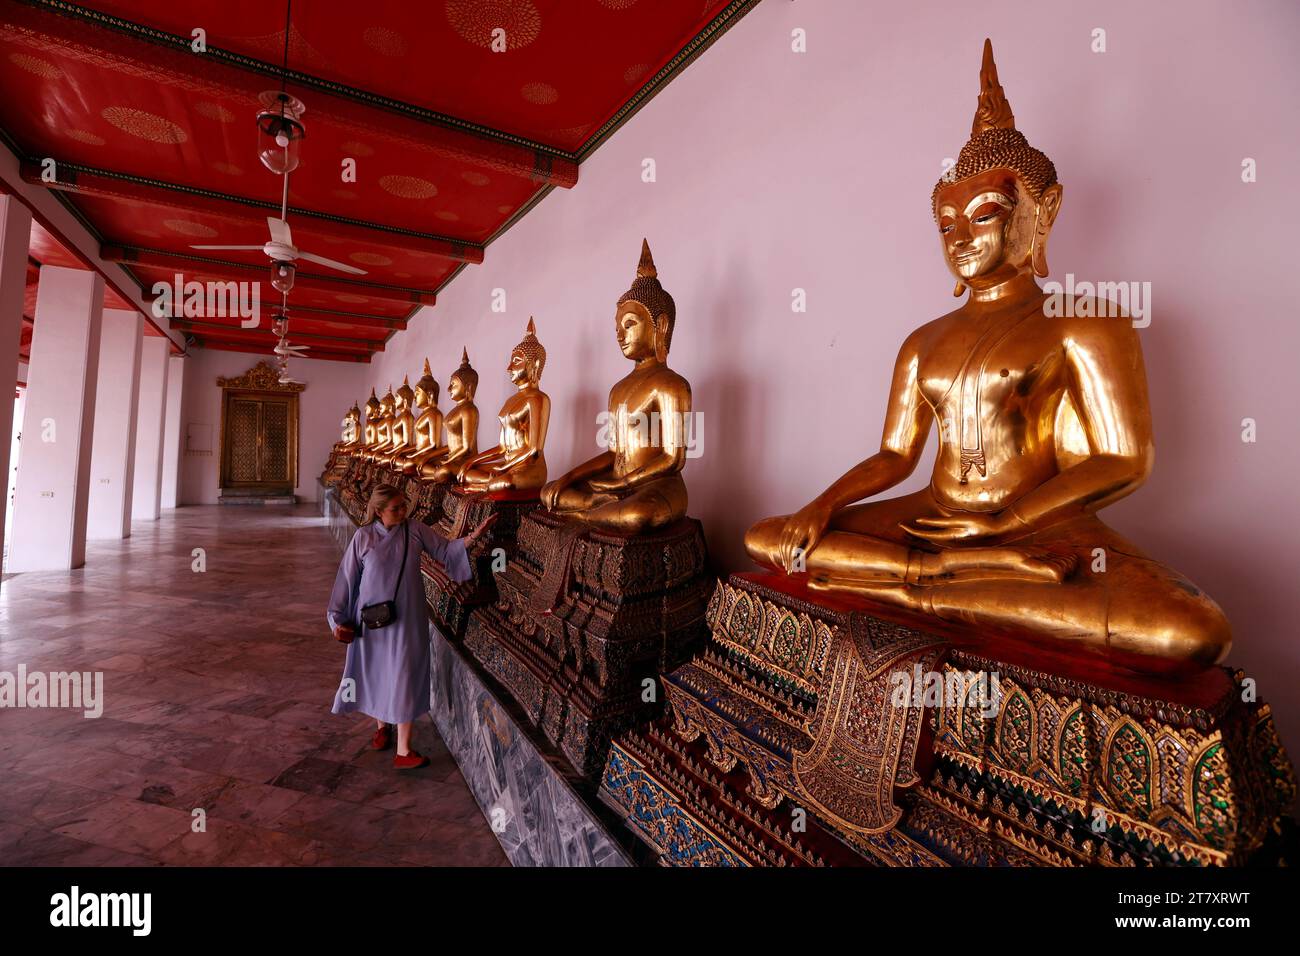 Rangée de statues de Bouddha dorées, geste témoin de la terre, Wat Pho (Temple du Bouddha couché), Bangkok, Thaïlande, Asie du Sud-est, Asie Banque D'Images